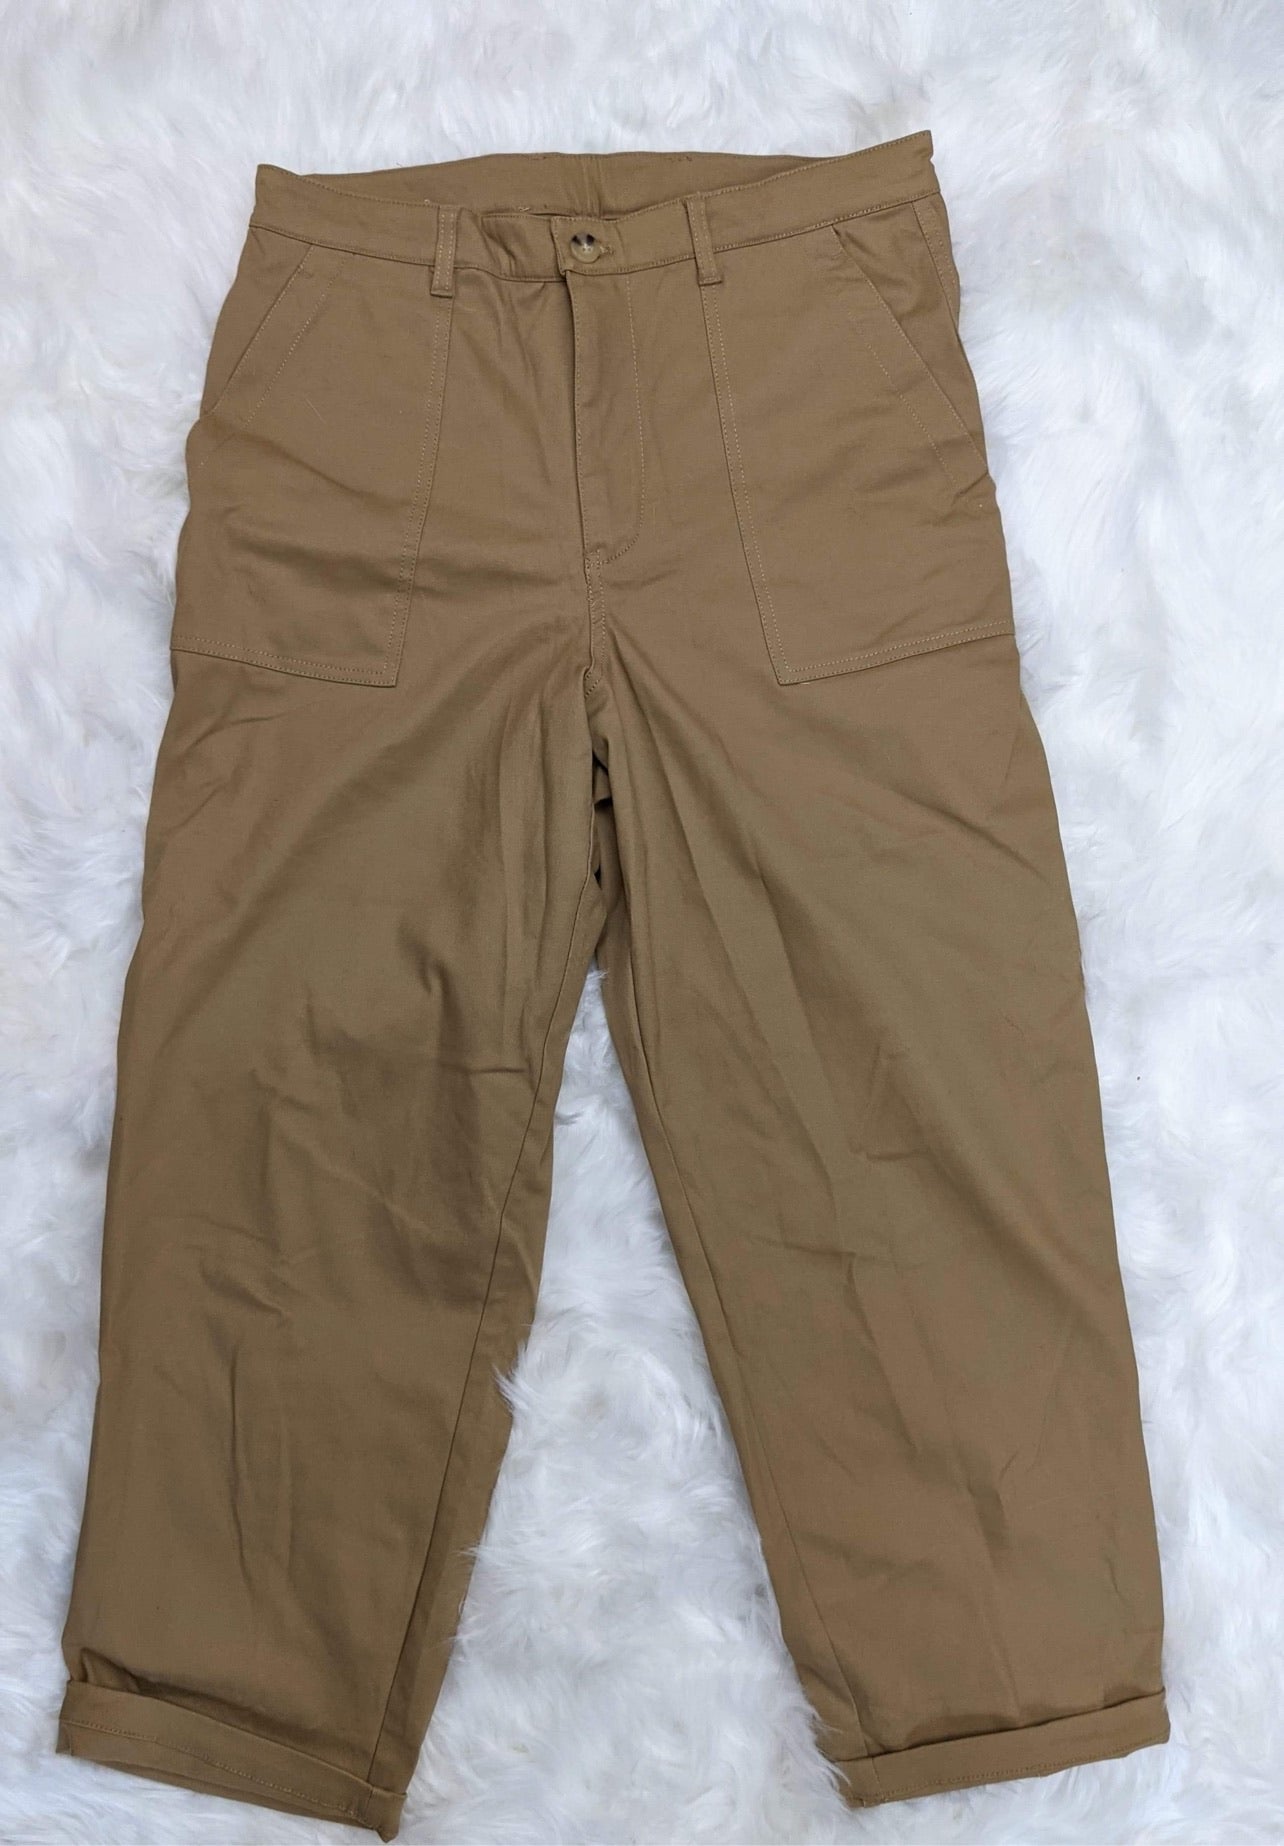 wide leg 1940s style mens pants fatigue style front patch pockets khaki colour